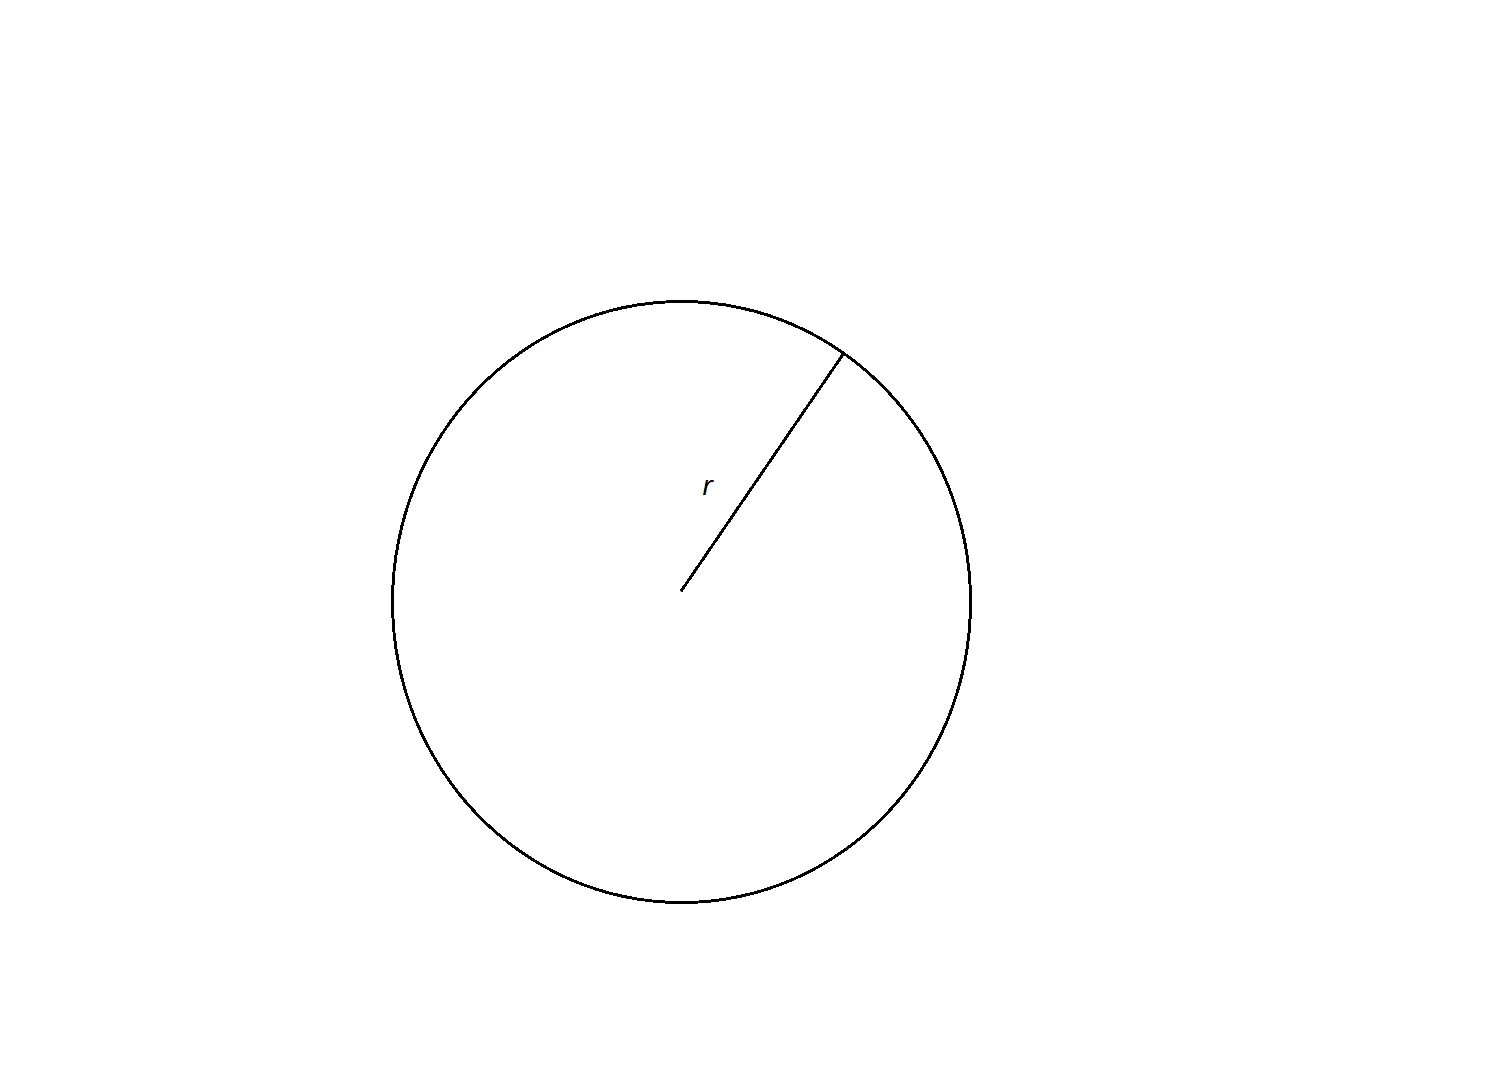 Мяча в центре круга. Окружность радиусом 8см диаметр 4 см. Круг диаметром 8 см. Круг радиусом 8 см. Круг радиусом 9 см.